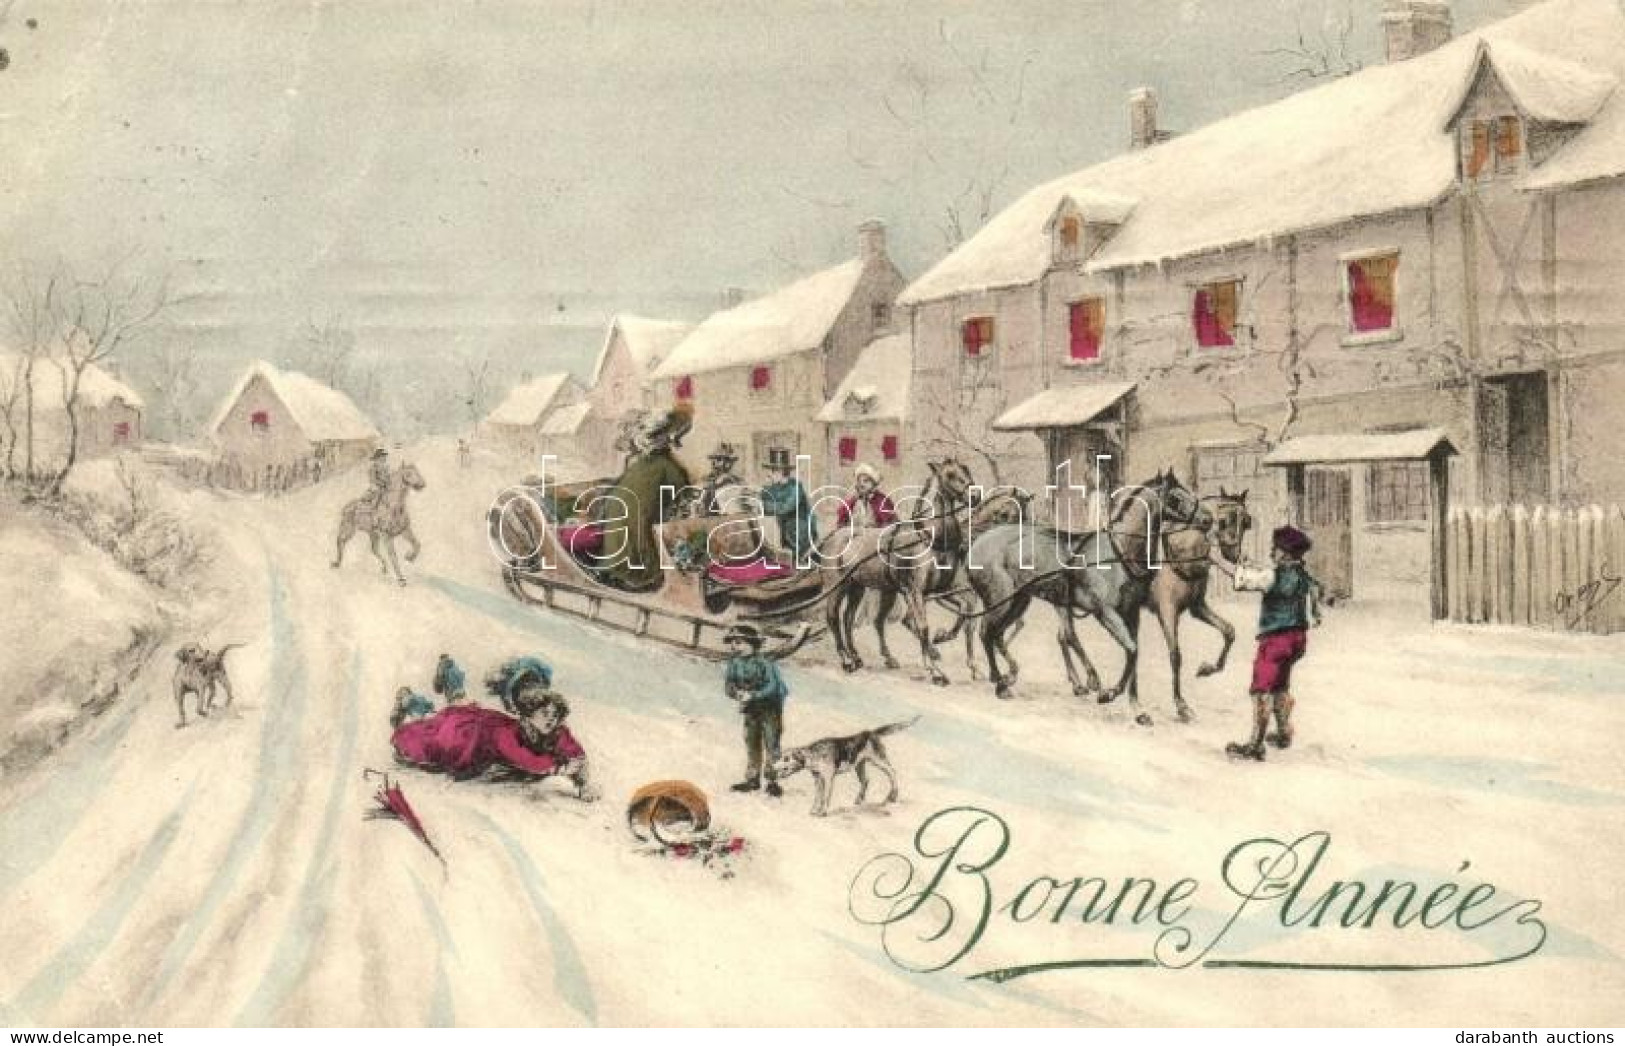 T3 'Bonne Année' / New Year, Horse Sled, Woman Fallen In The Snow, Collection Réve No. 026 (EB) - Non Classés